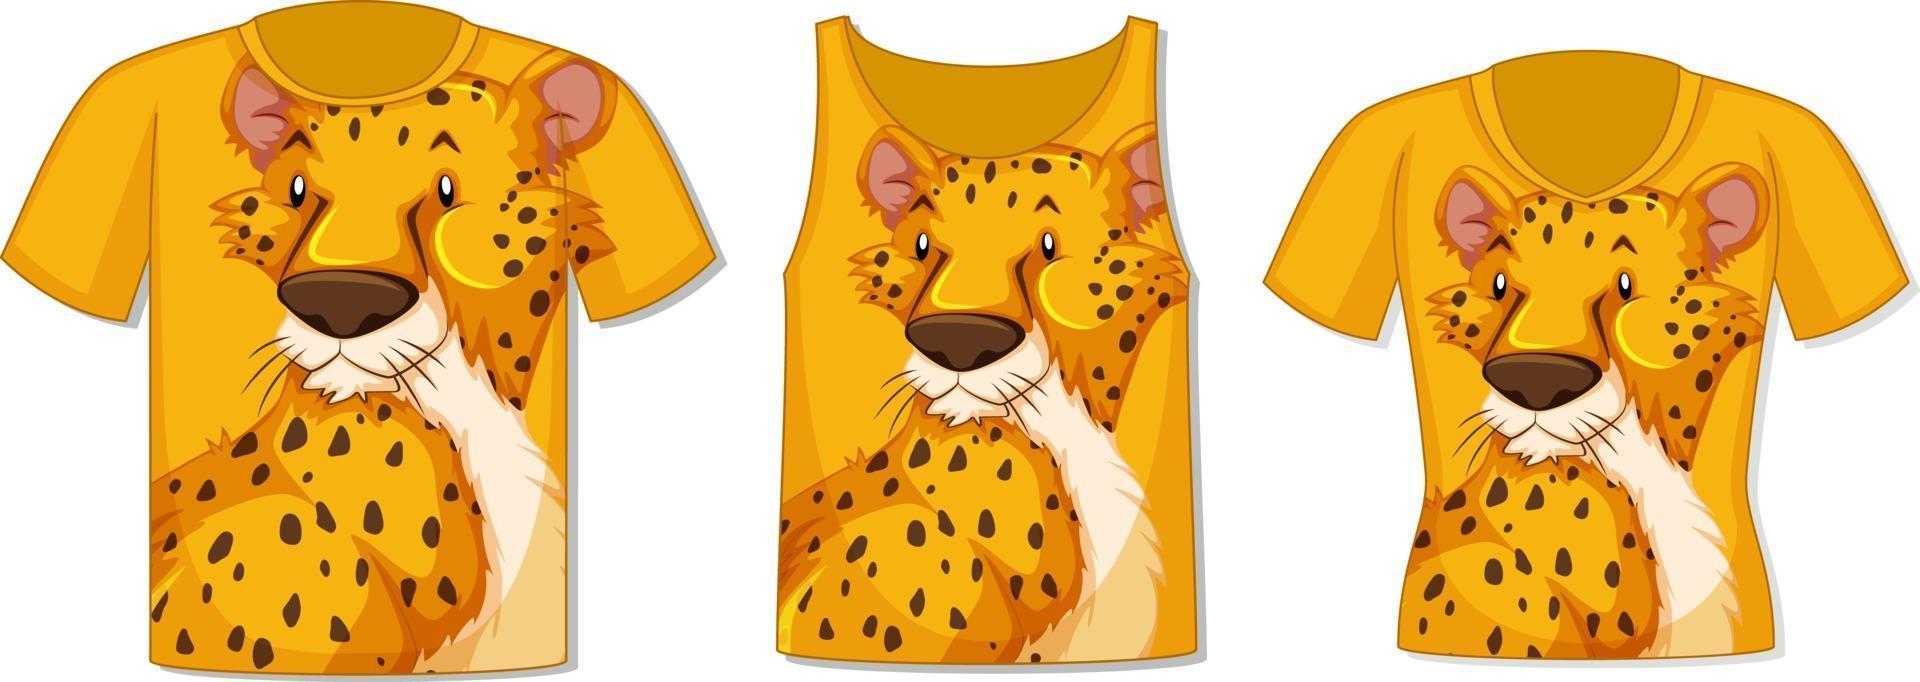 framsidan av t-shirt med leopardmall vektor